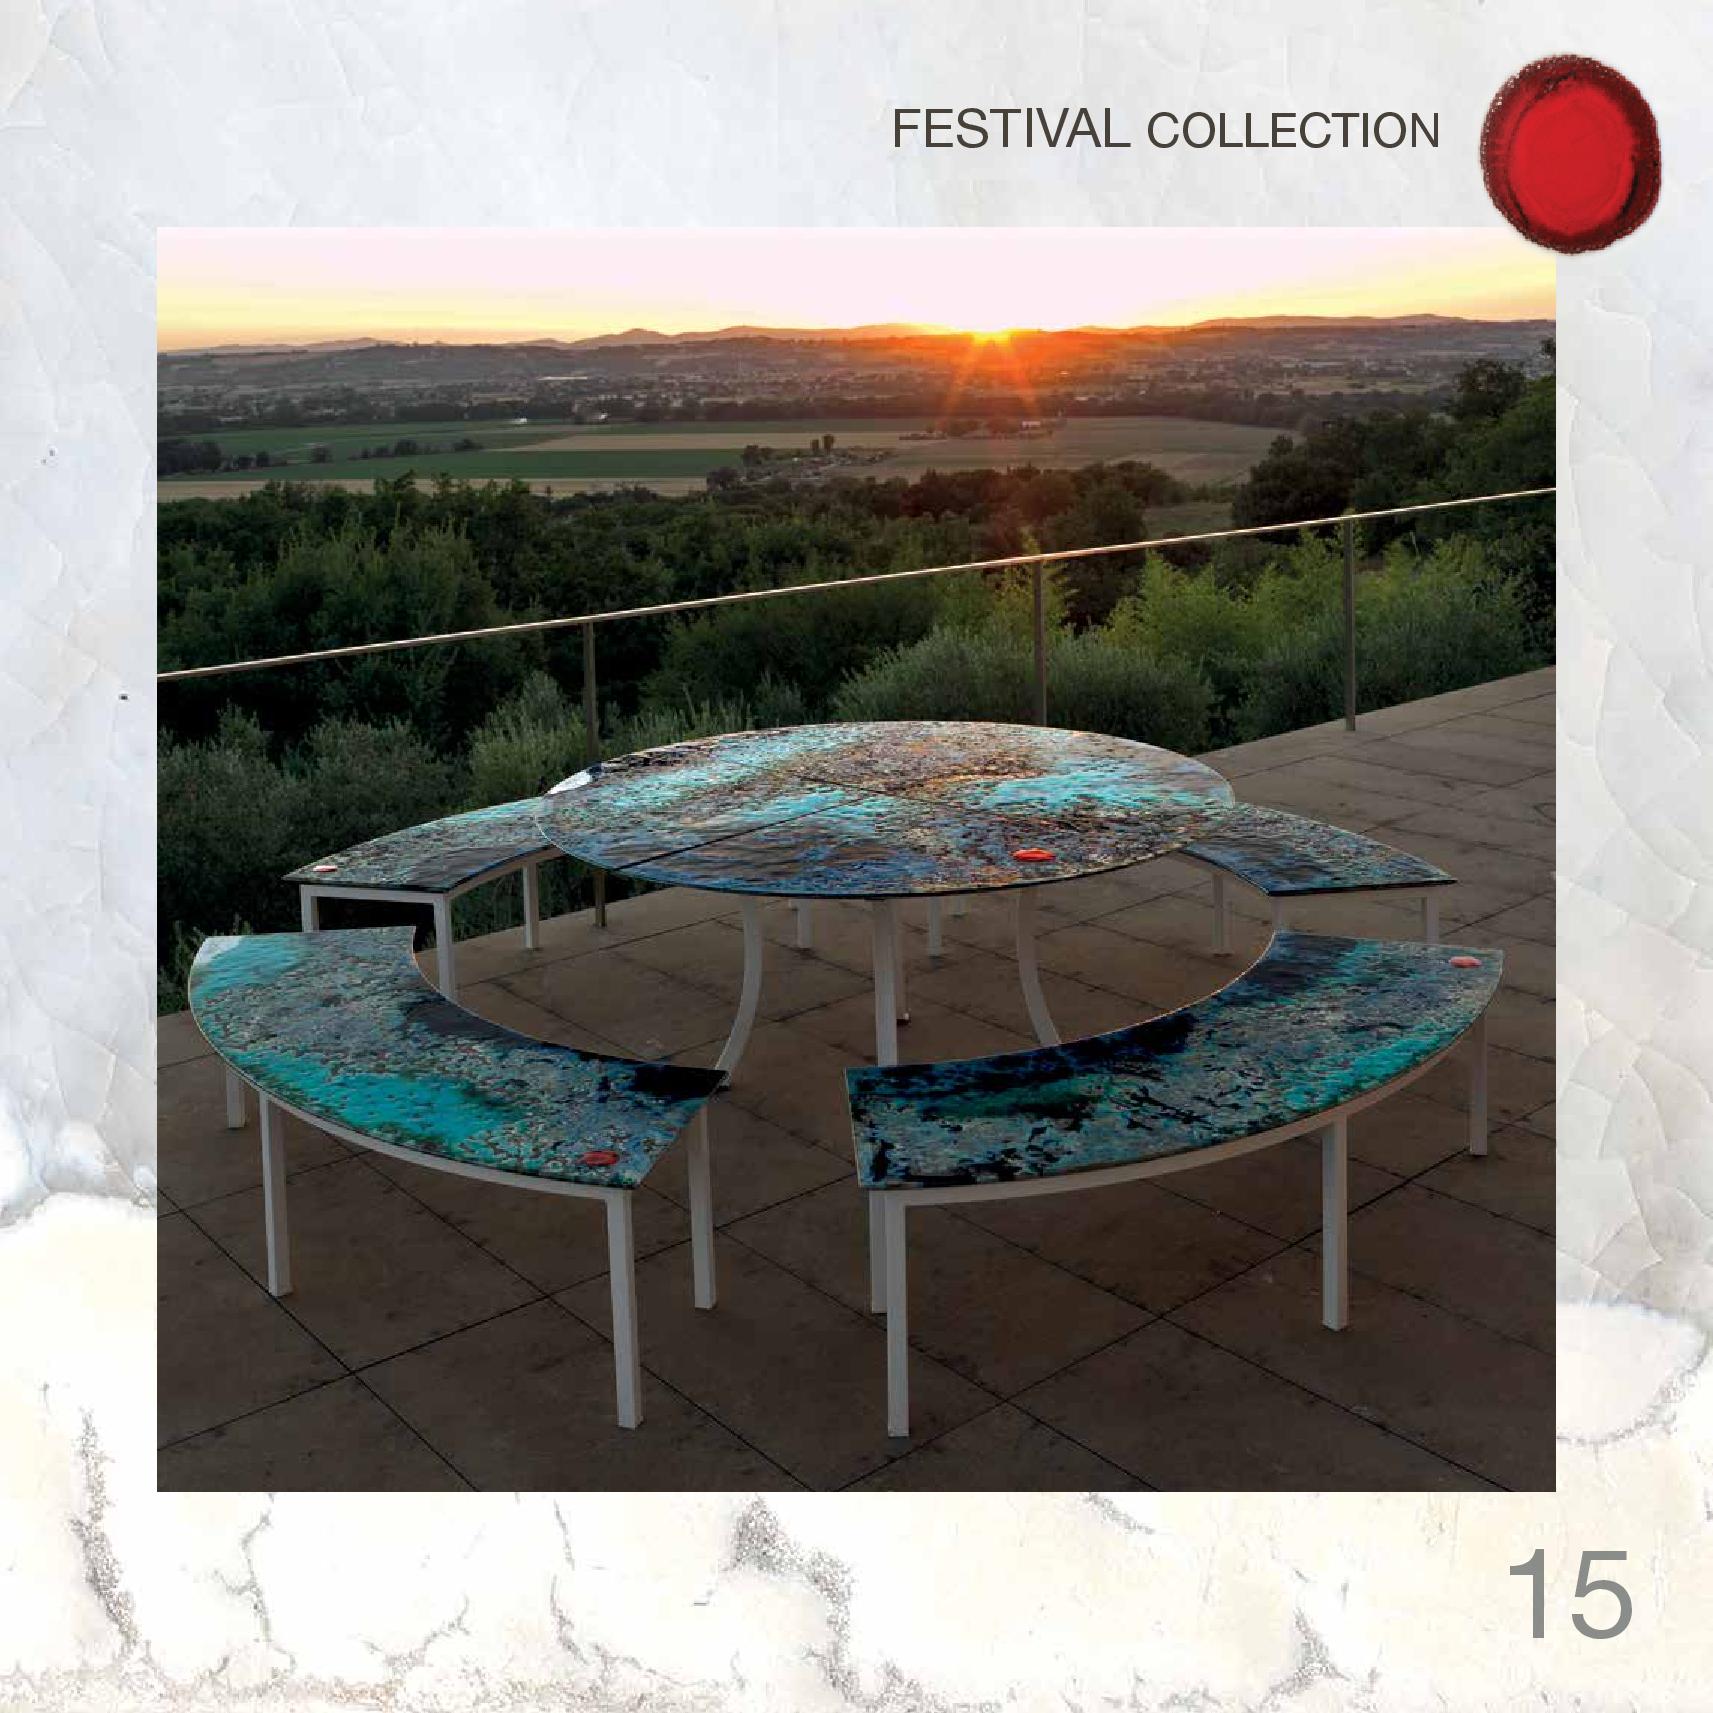 Столешница со столиком из вулканического камня Festival Collection DOMIZIANI, Италия ></div>
		<div class=